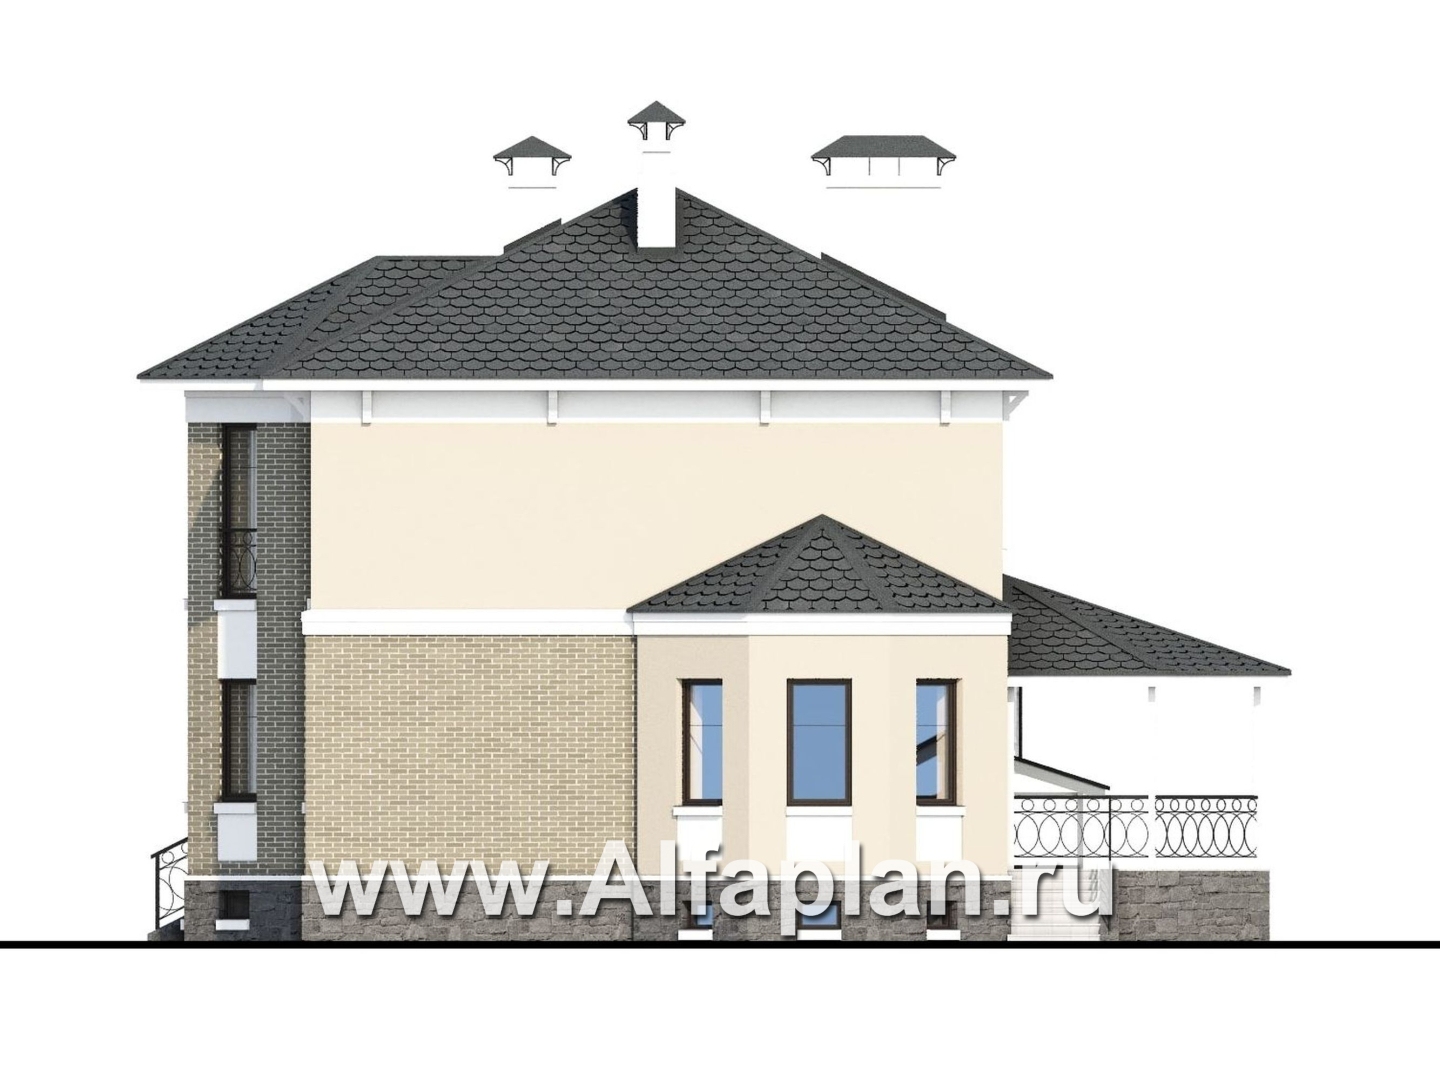 «Классика» - проект двухэтажного дома с эркером, планировка с кабинетом на 1 эт и с террасой, с цокольным этажом - фасад дома